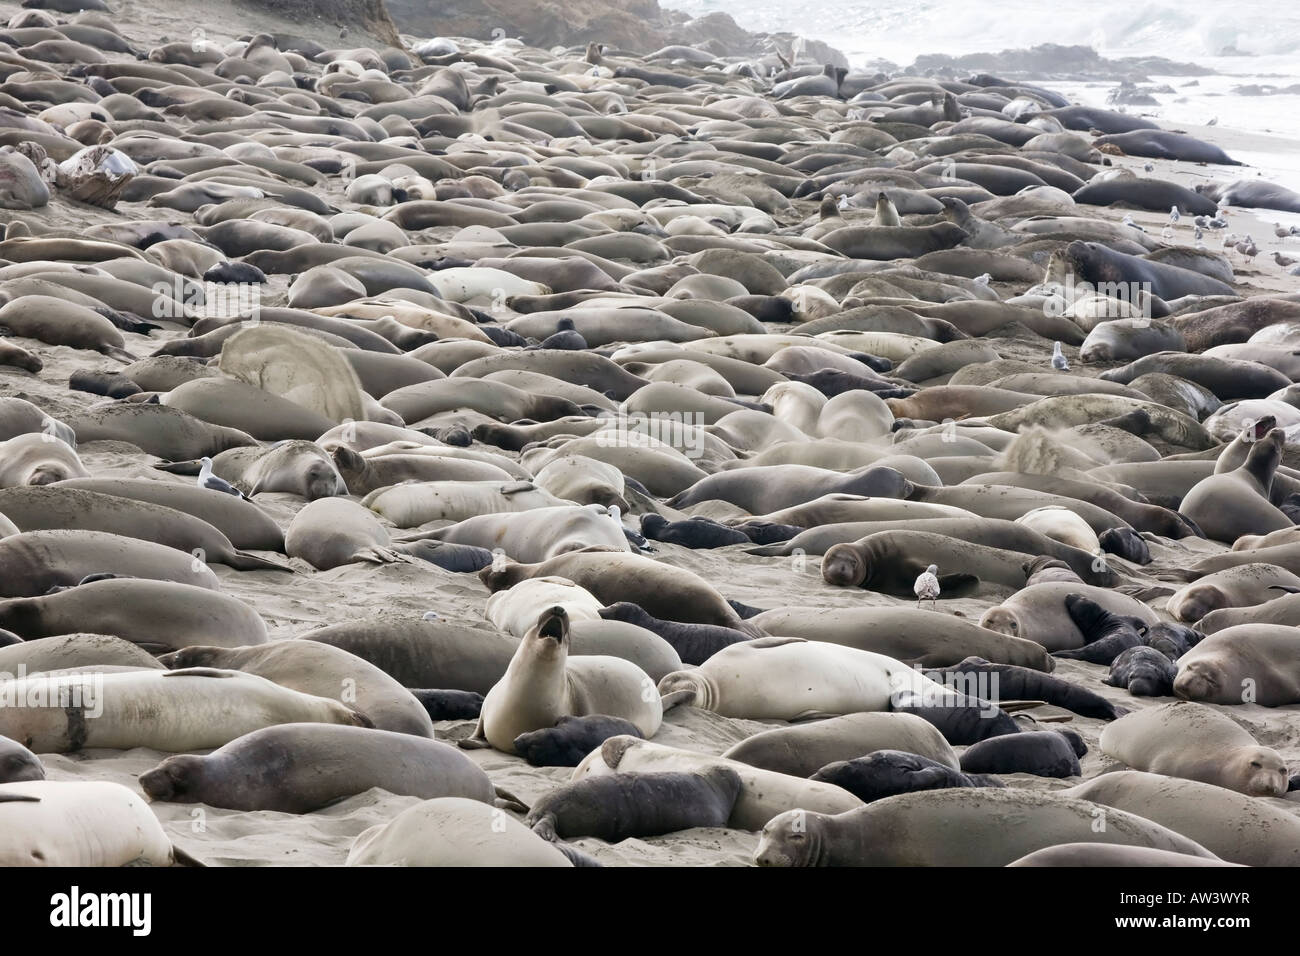 https://c8.alamy.com/comp/AW3WYR/a-breeding-colony-of-adult-northern-elephant-seals-on-a-california-AW3WYR.jpg